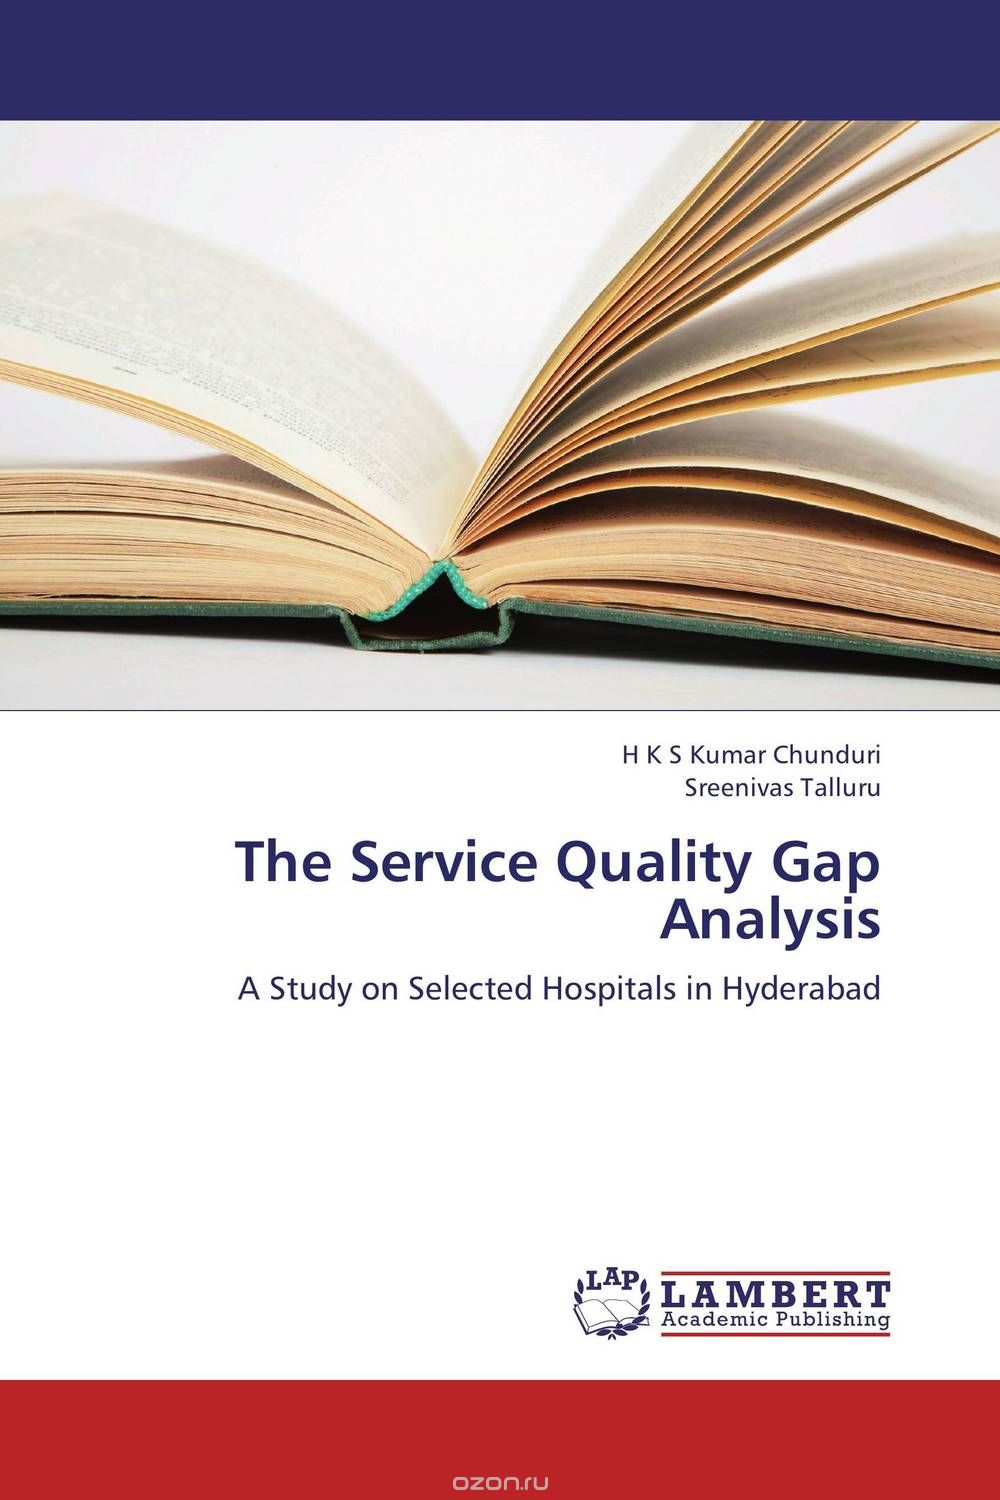 Скачать книгу "The Service Quality Gap Analysis"